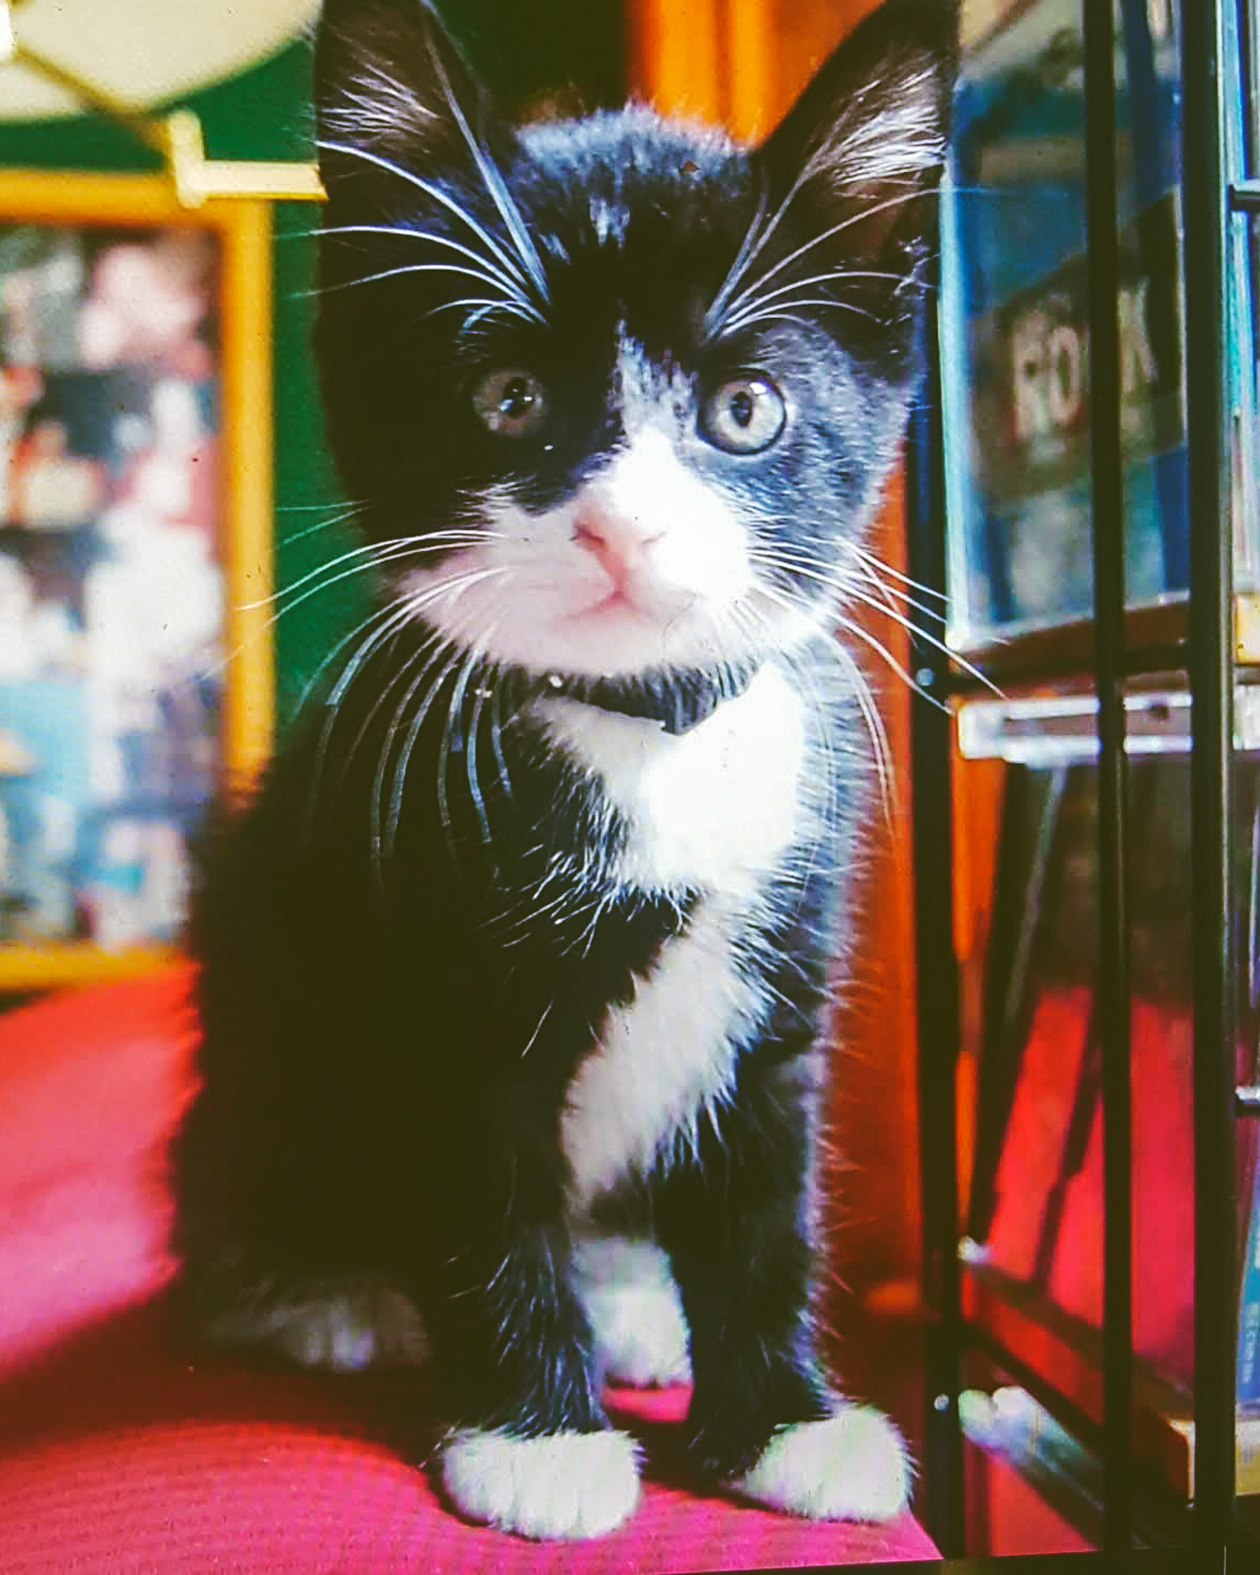 A black and white tuxedo print kitten.